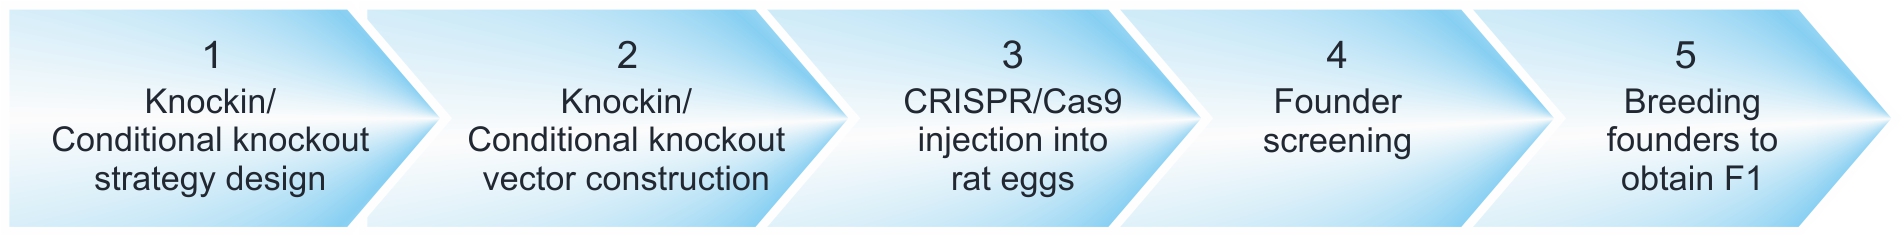 crispr/cas9 knockin rats service